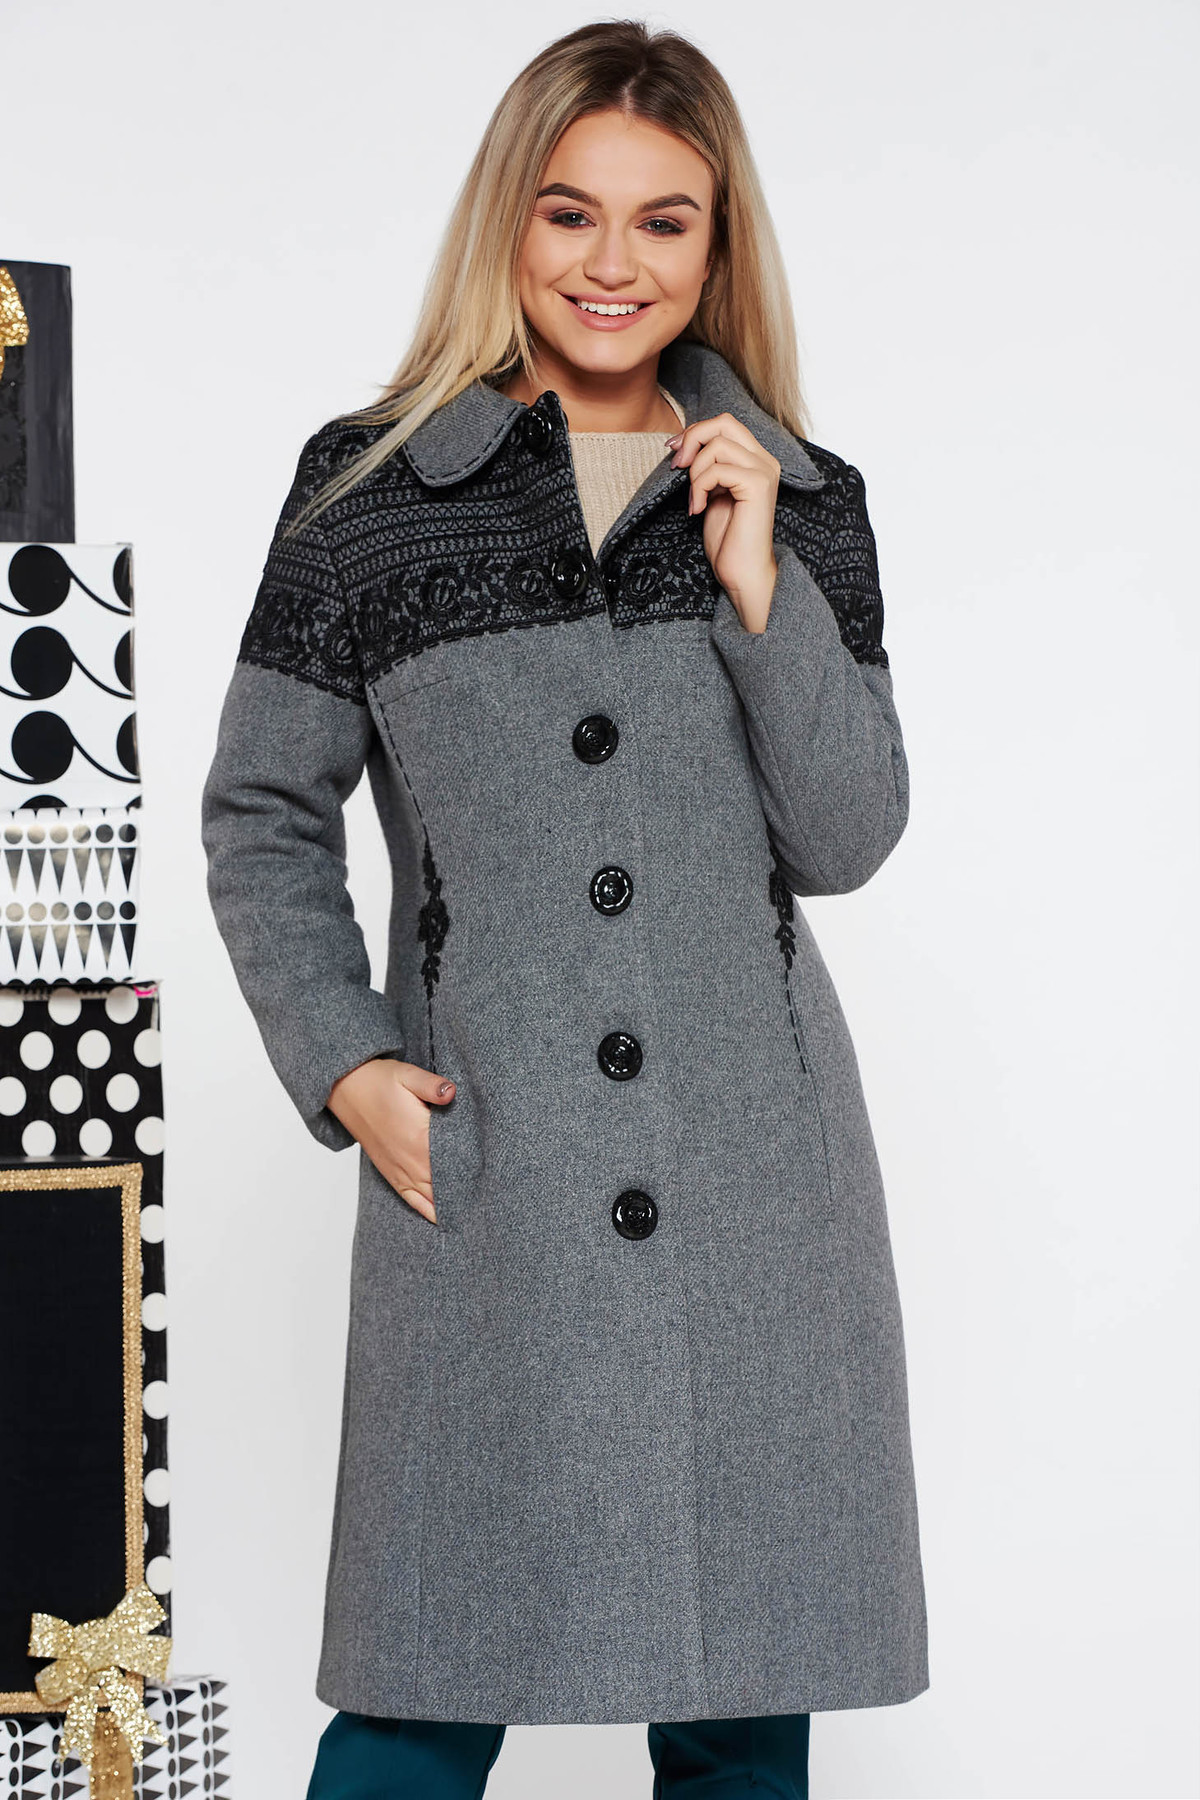 Palton LaDonna gri elegant cu un croi cambrat brodat din lana captusit pe interior cu buzunare captusit pe interior